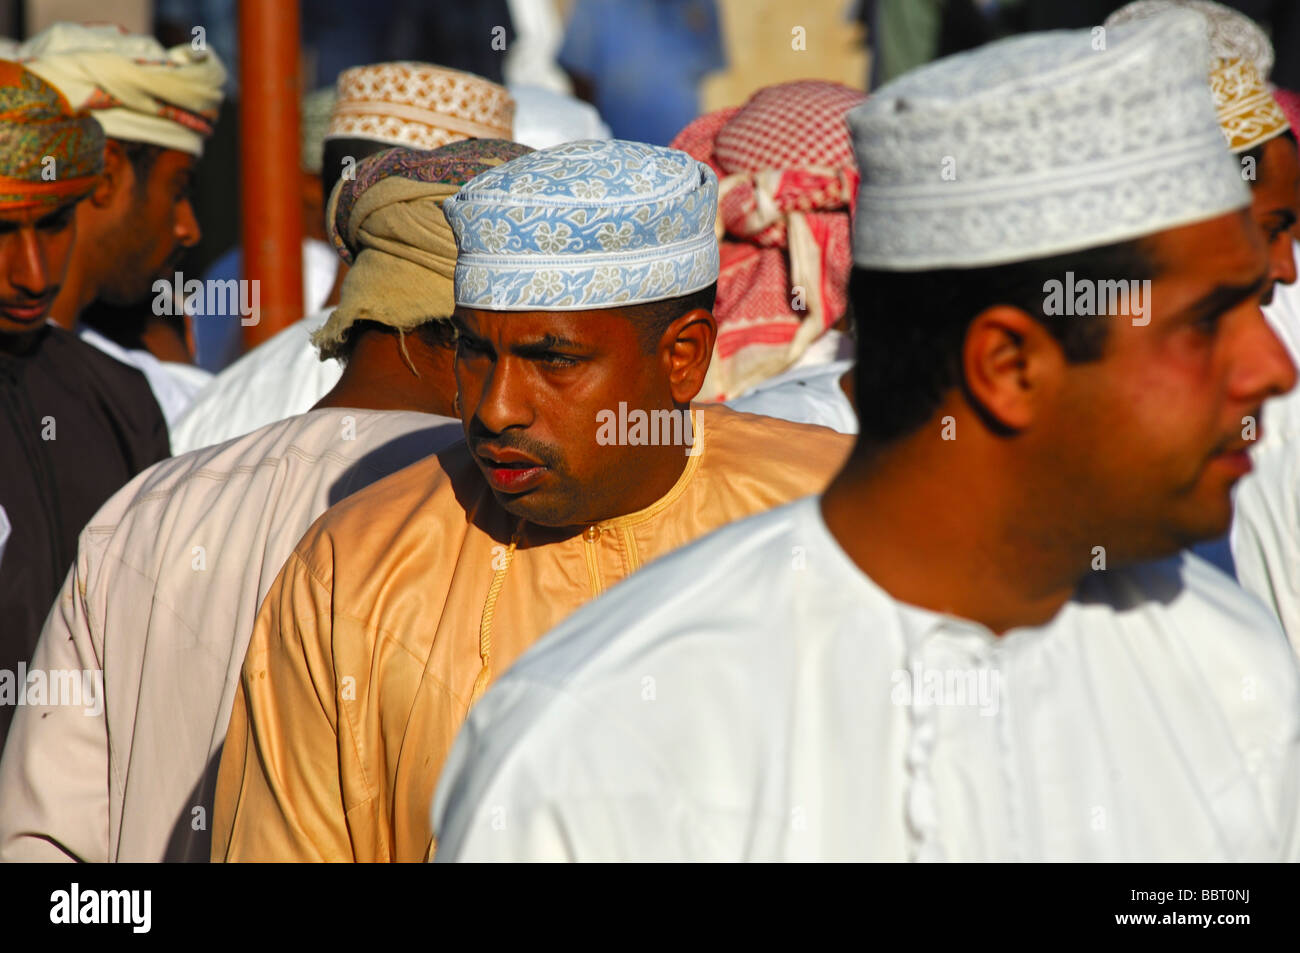 Groupe d'hommes omanais dans le costume national et une kummah Dishdasha cap sur la tête, Nizwa, Sultanat d'Oman Banque D'Images